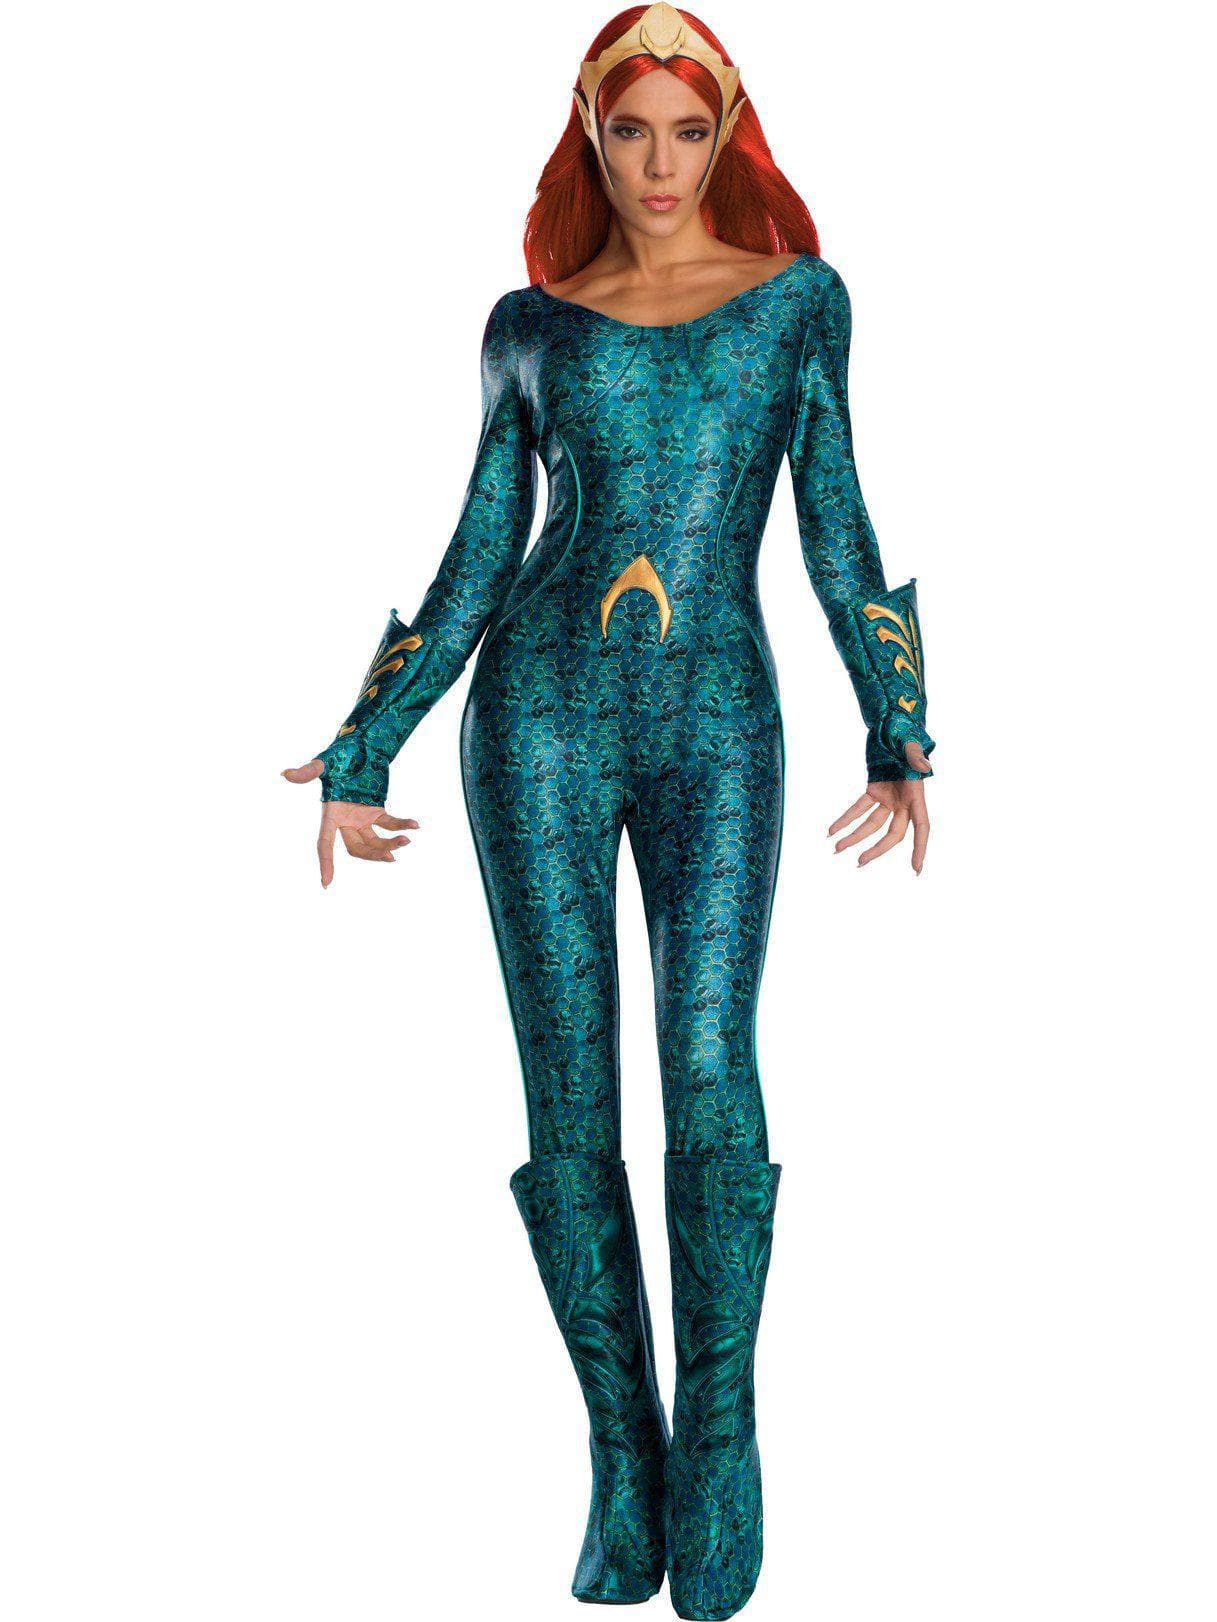 Women's Aquaman Mera Costume - Deluxe - costumes.com